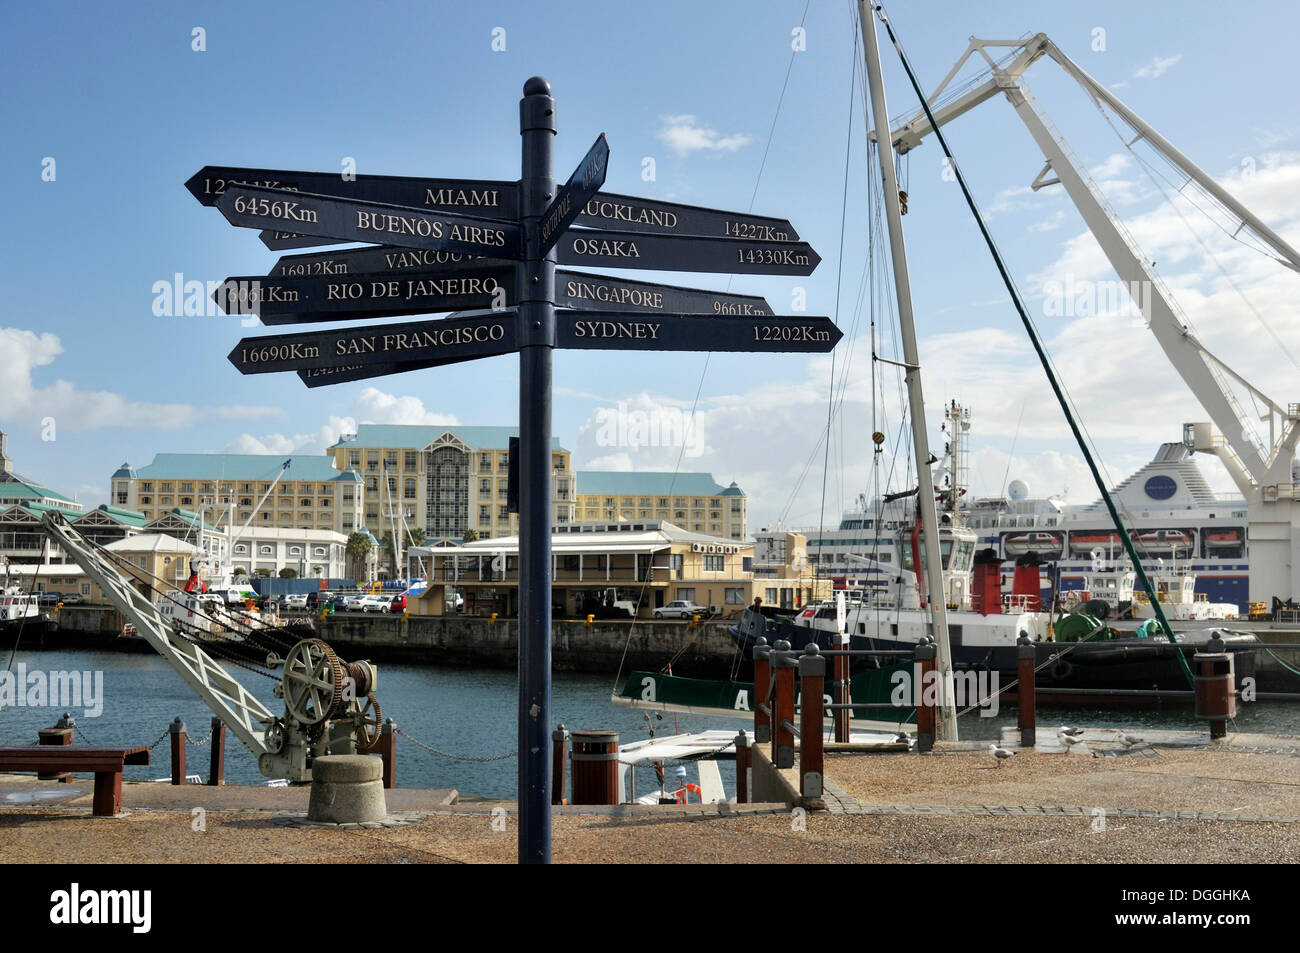 Wegweiser mit Entfernungen zu Städten auf verschiedenen Kontinenten, Waterkant Bezirk V & A Waterfront, Cape Town, Südafrika, Afrika Stockfoto